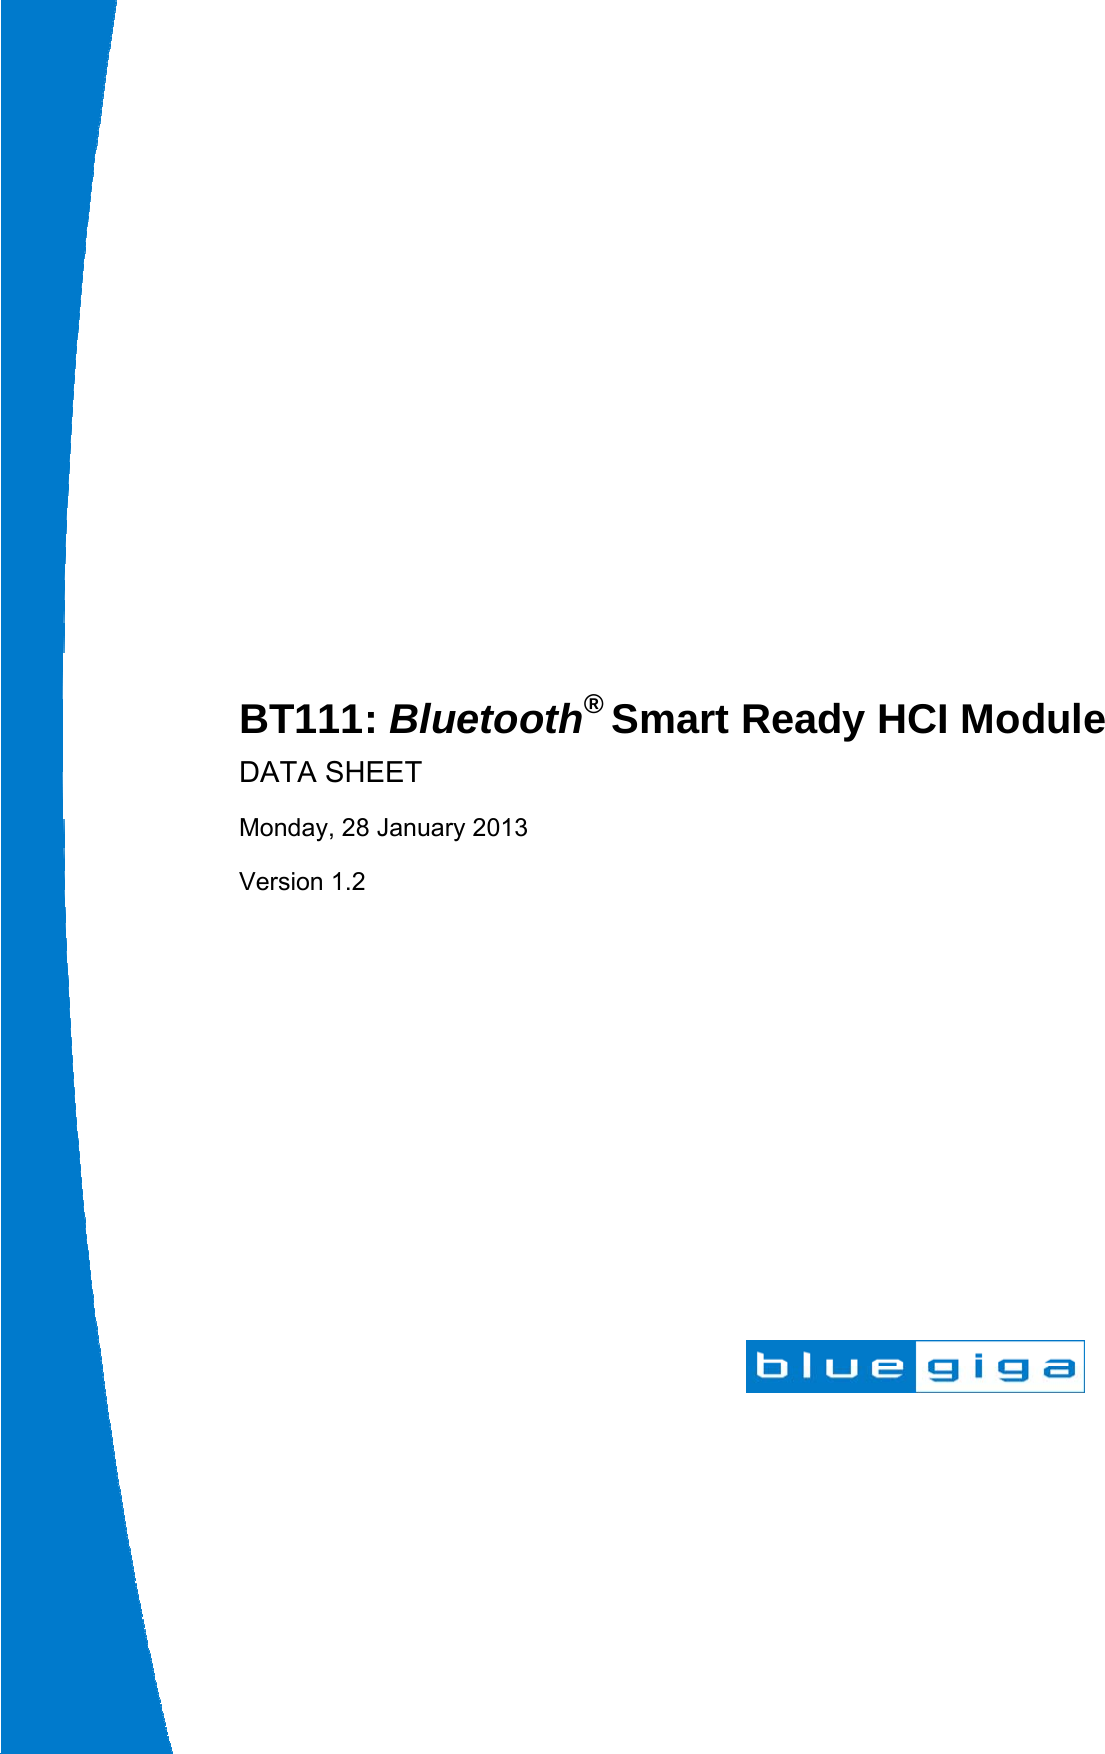                 BT111: Bluetooth® Smart Ready HCI Module DATA SHEET Monday, 28 January 2013 Version 1.2  